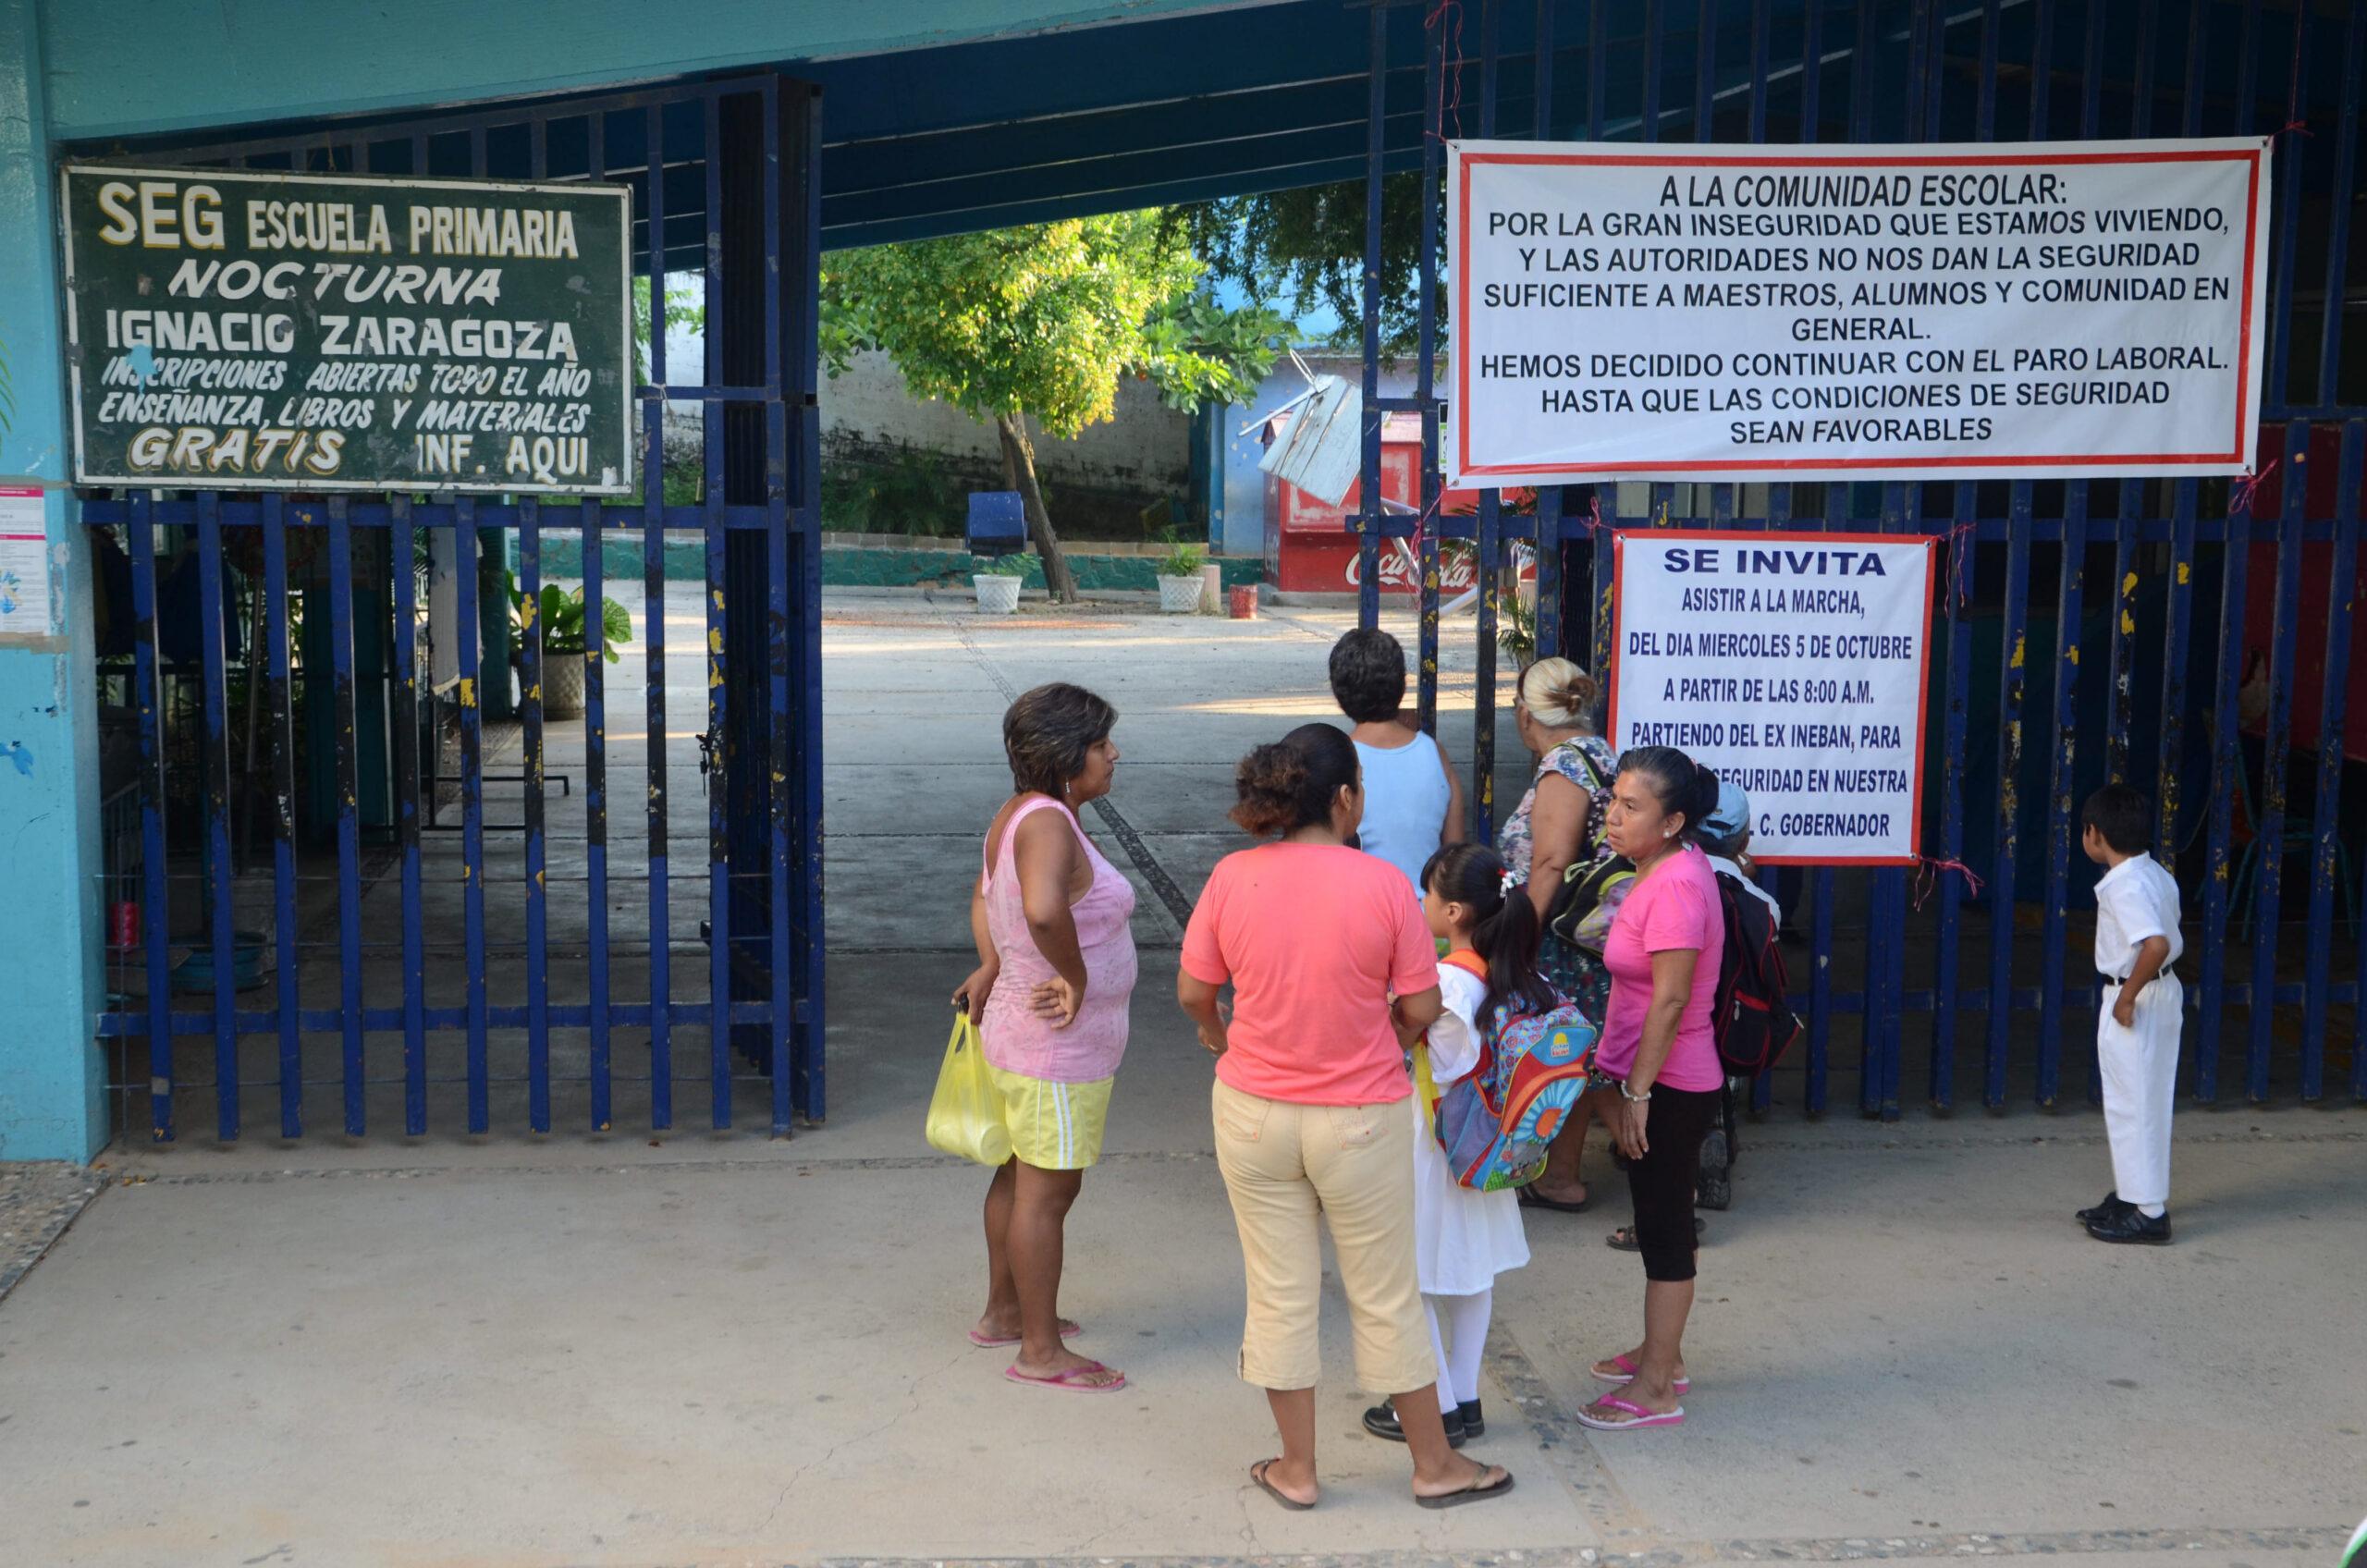 Militares vigilarán escuelas de Acapulco; 100 terminan el paro y regresan a clases